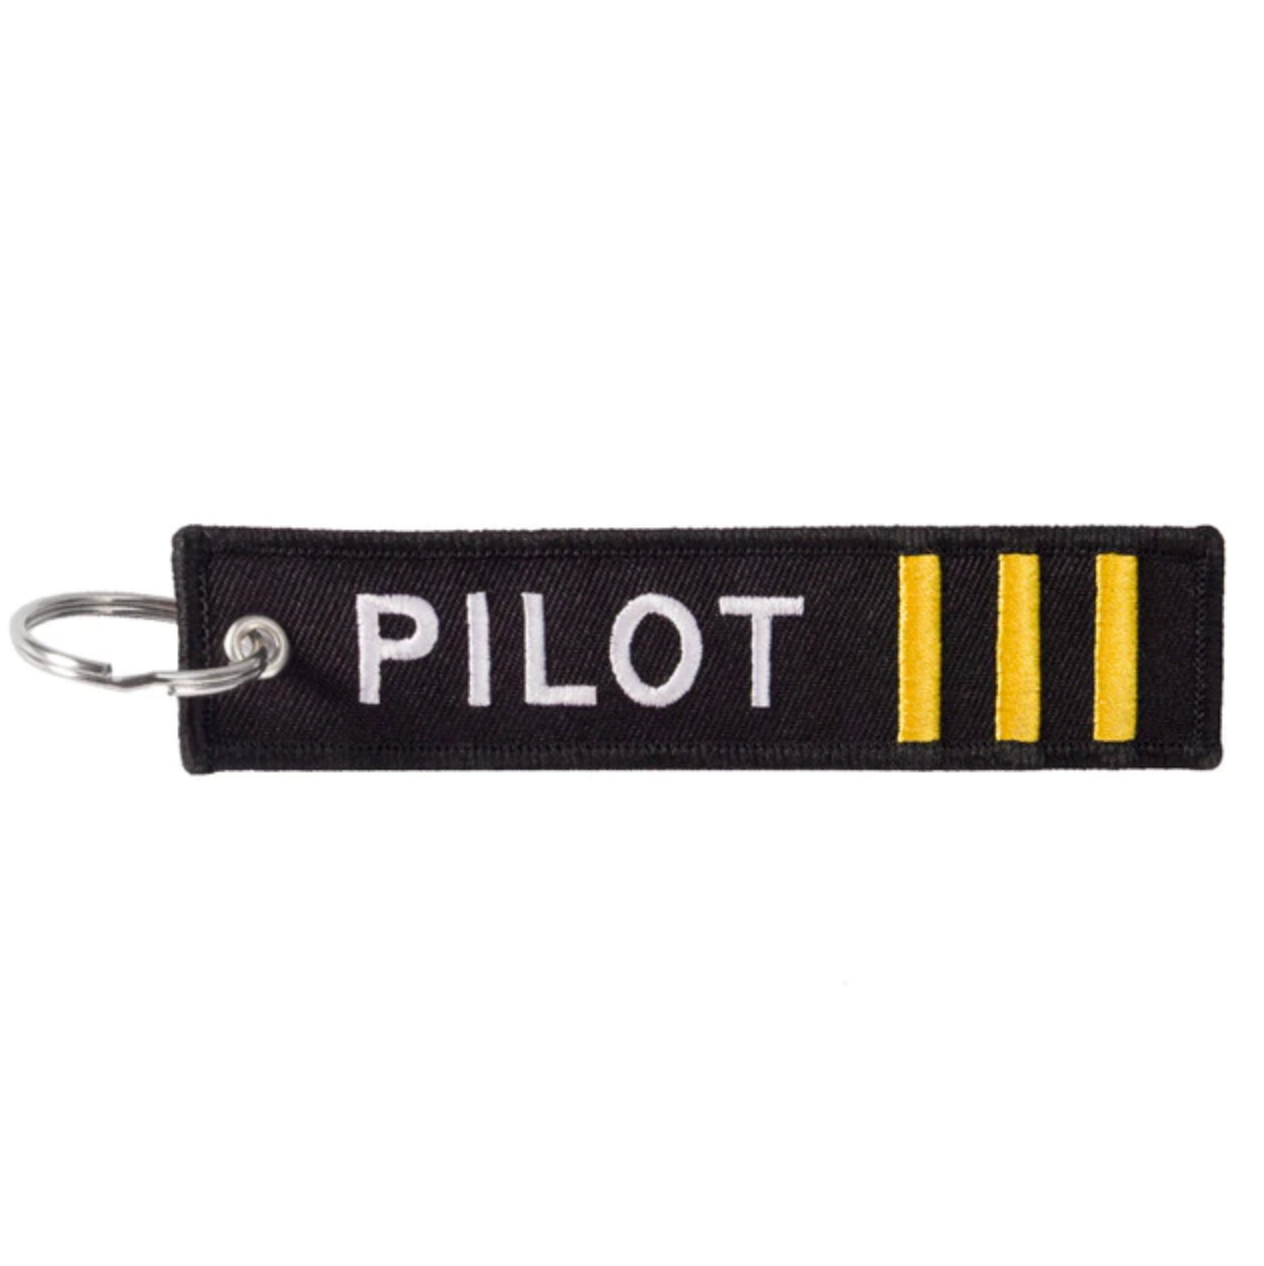 PILOT (3 Lines) Designed Key Chains